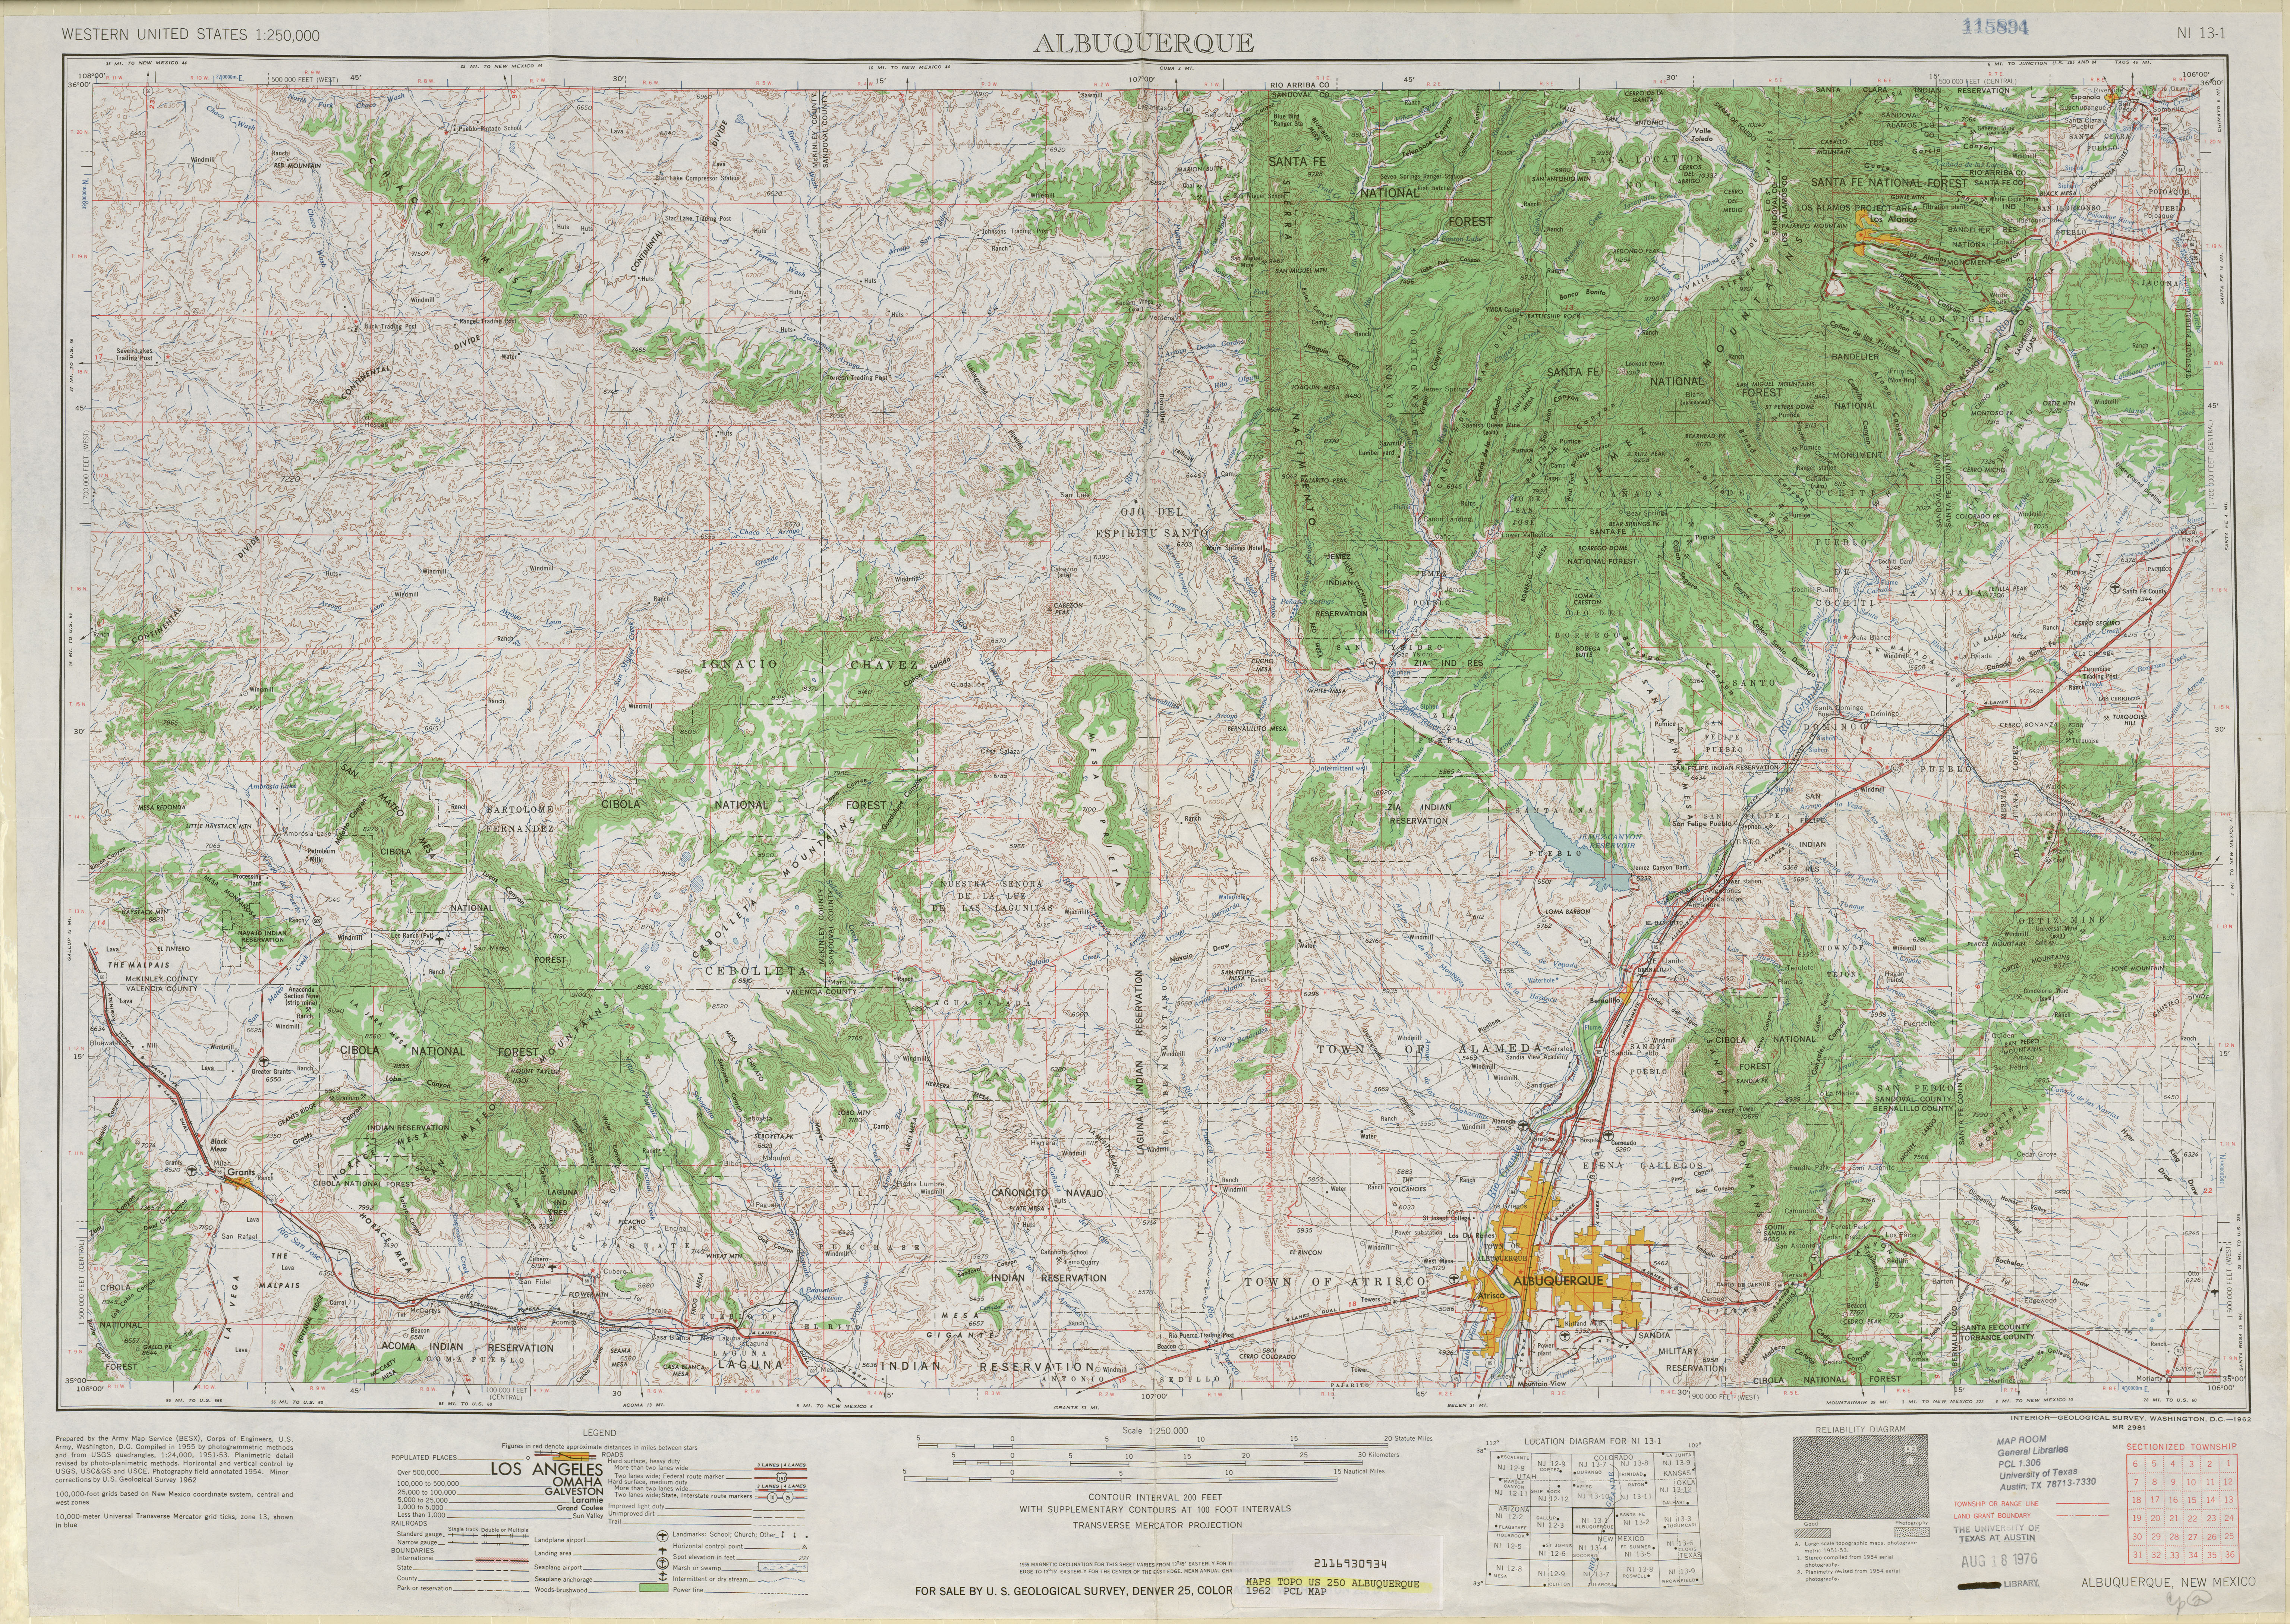 Hoja Albuquerque del Mapa Topográfico de los Estados Unidos 1962